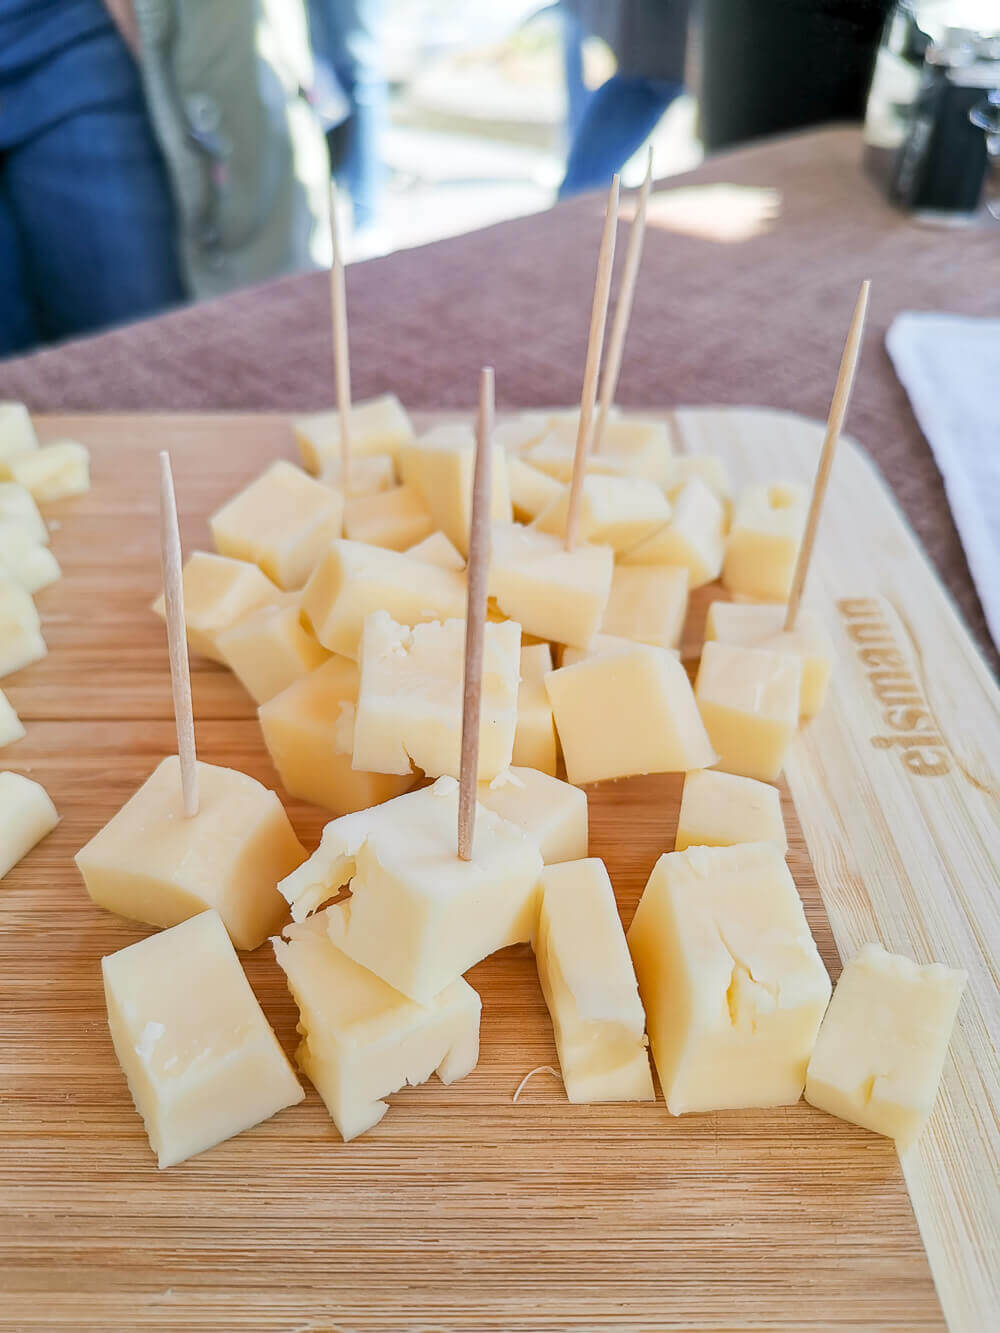 Stilfser Käse, Südtirol - gute Stilfser Häppchen